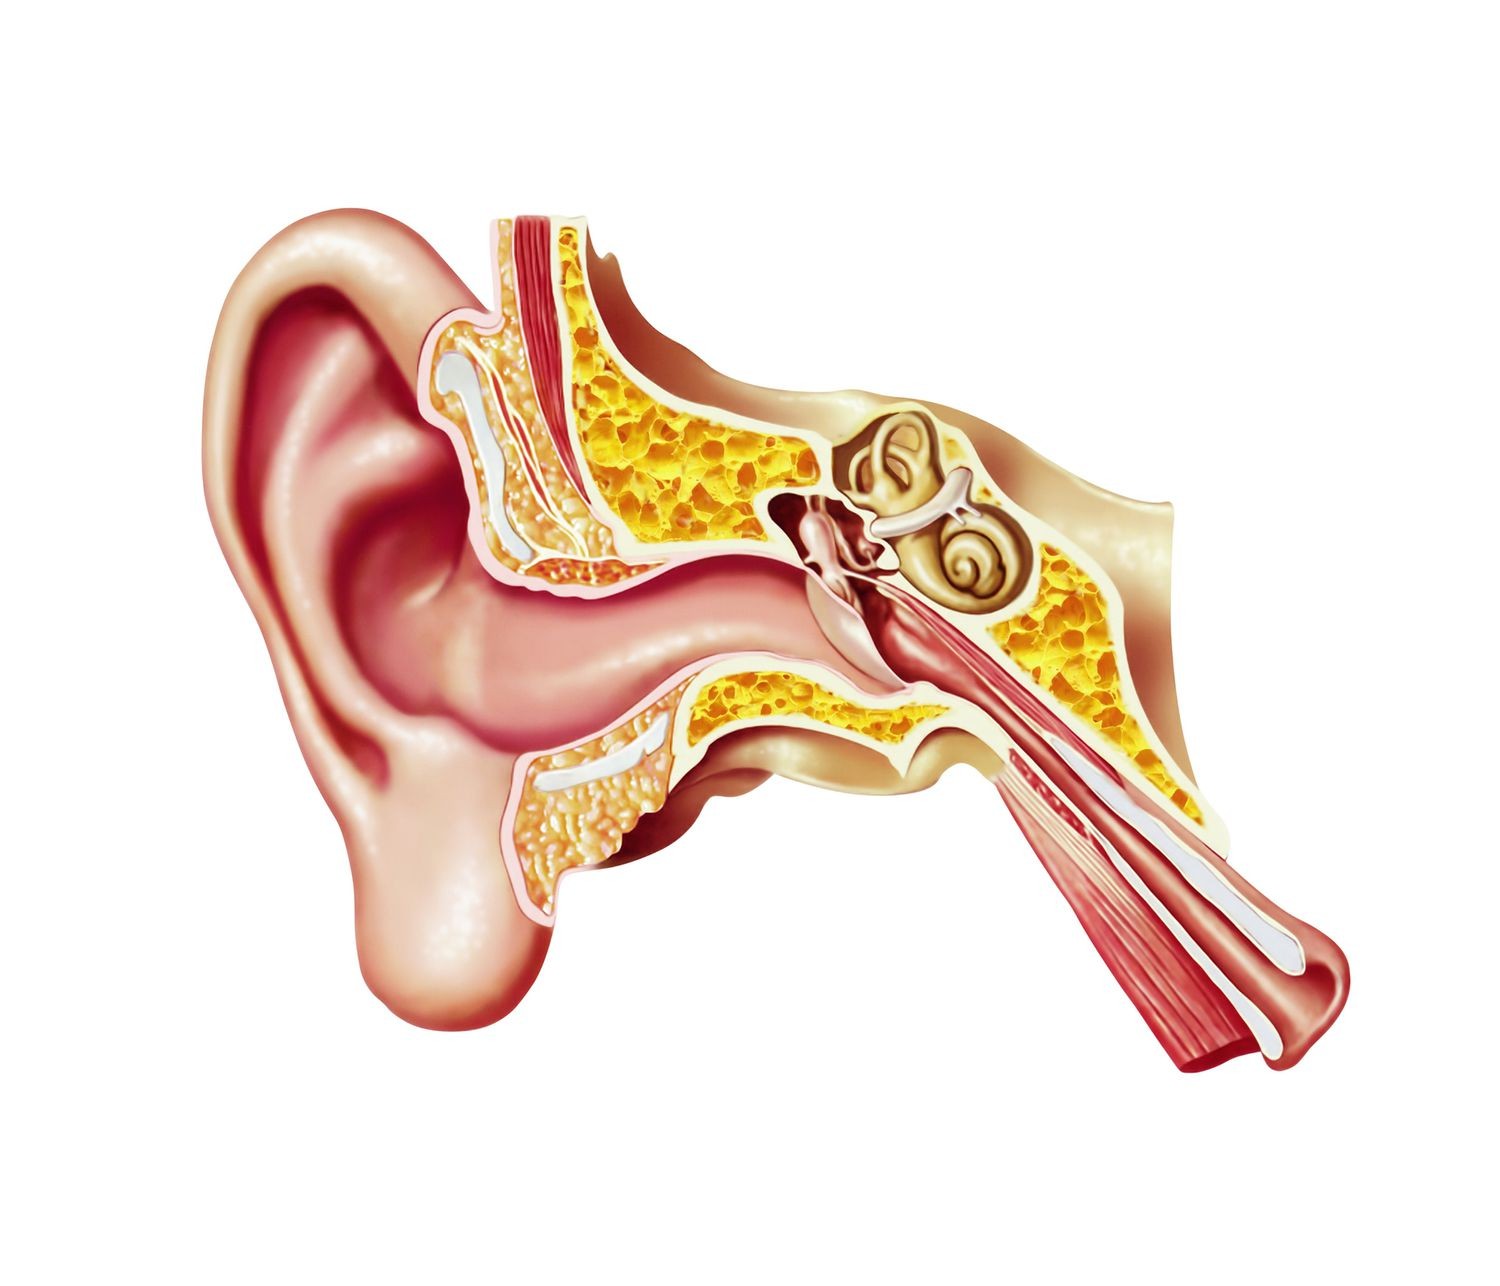 ما هي أجزاء الأذن